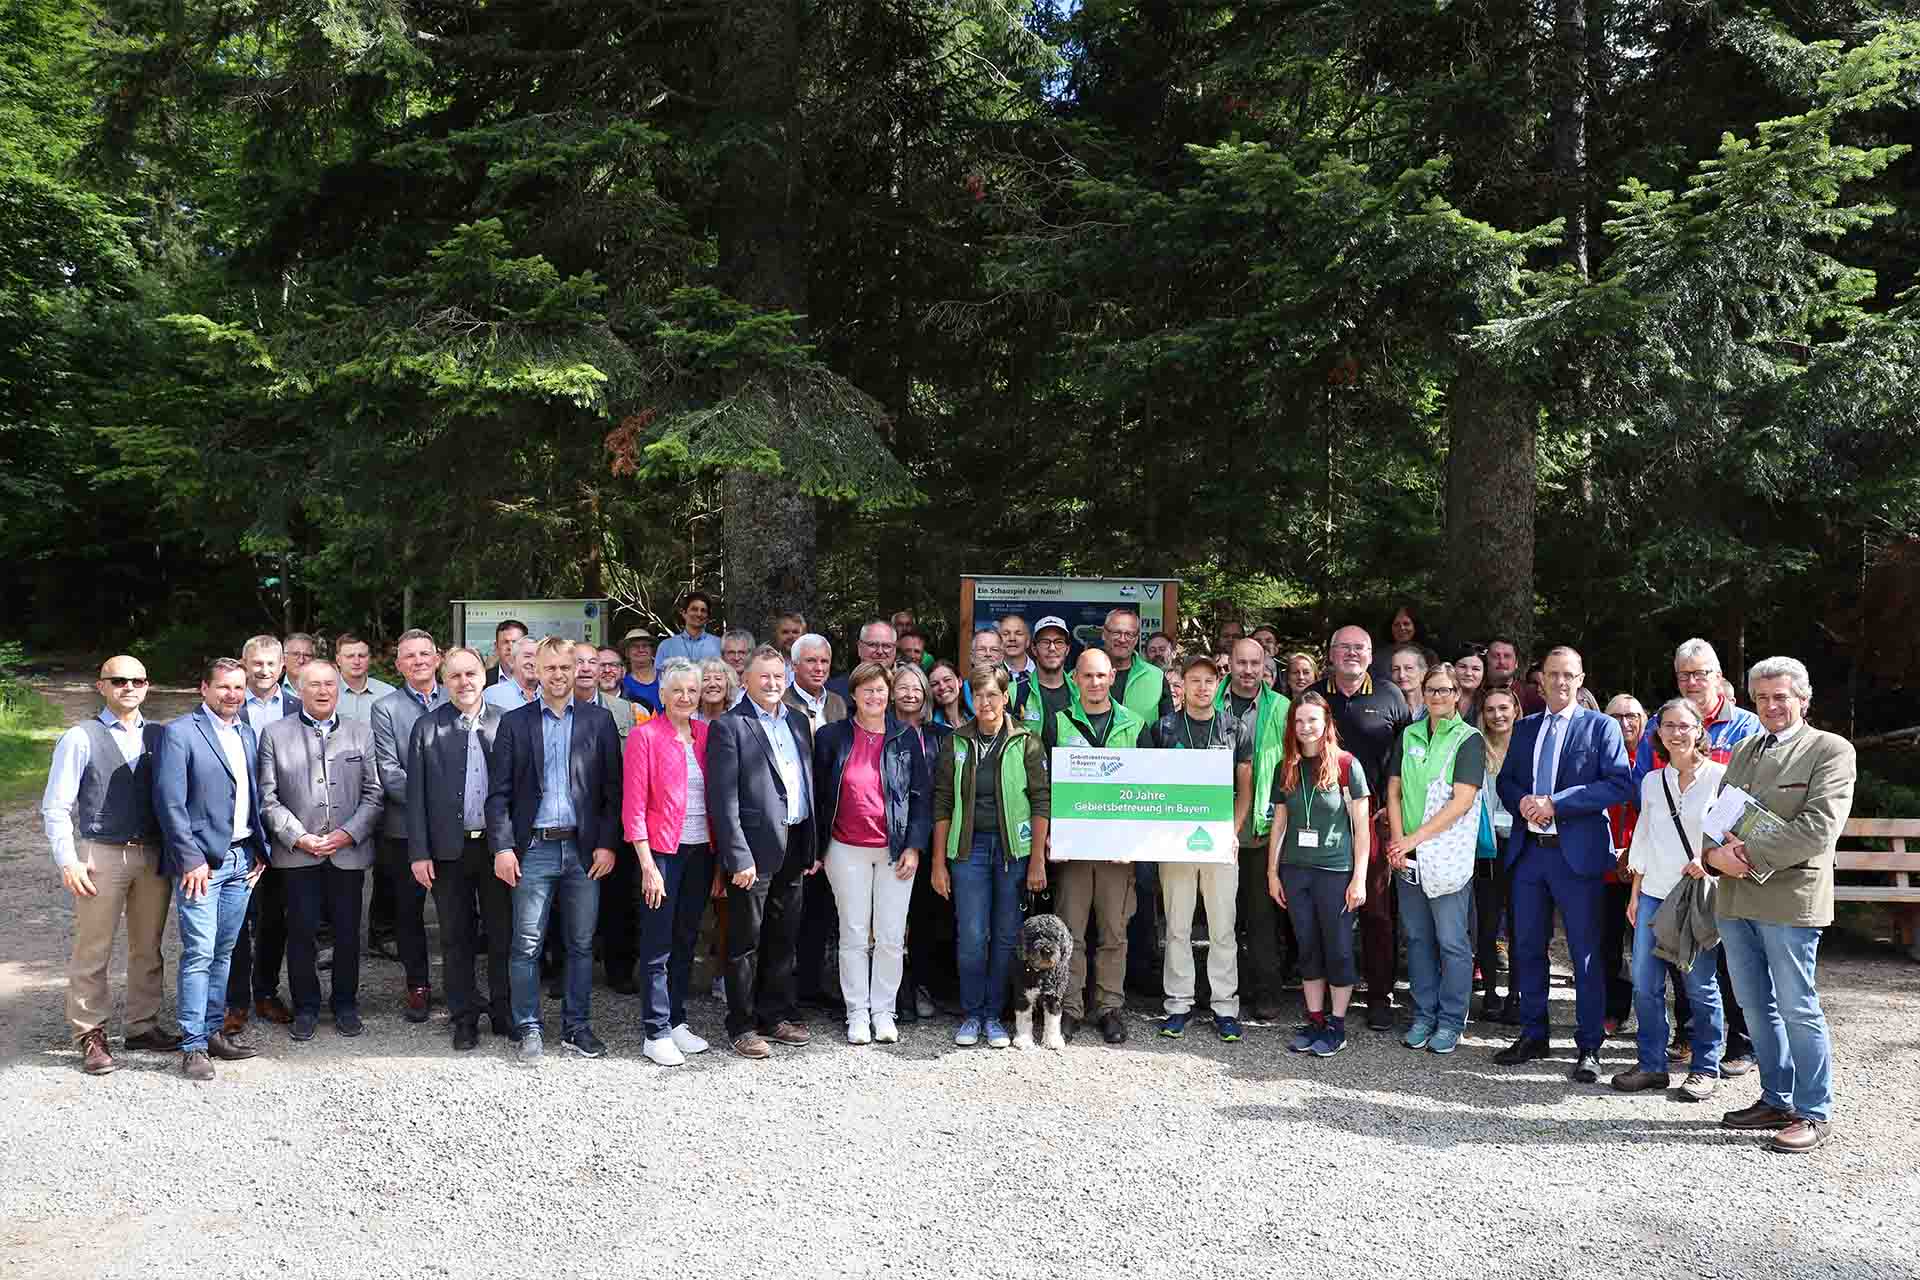 Gruppenfoto am Arbersee aller Teilnehmerinnen und Teilnehmer der Veranstaltung 20 Jahre Gebietsbetreuung in Niederbayern